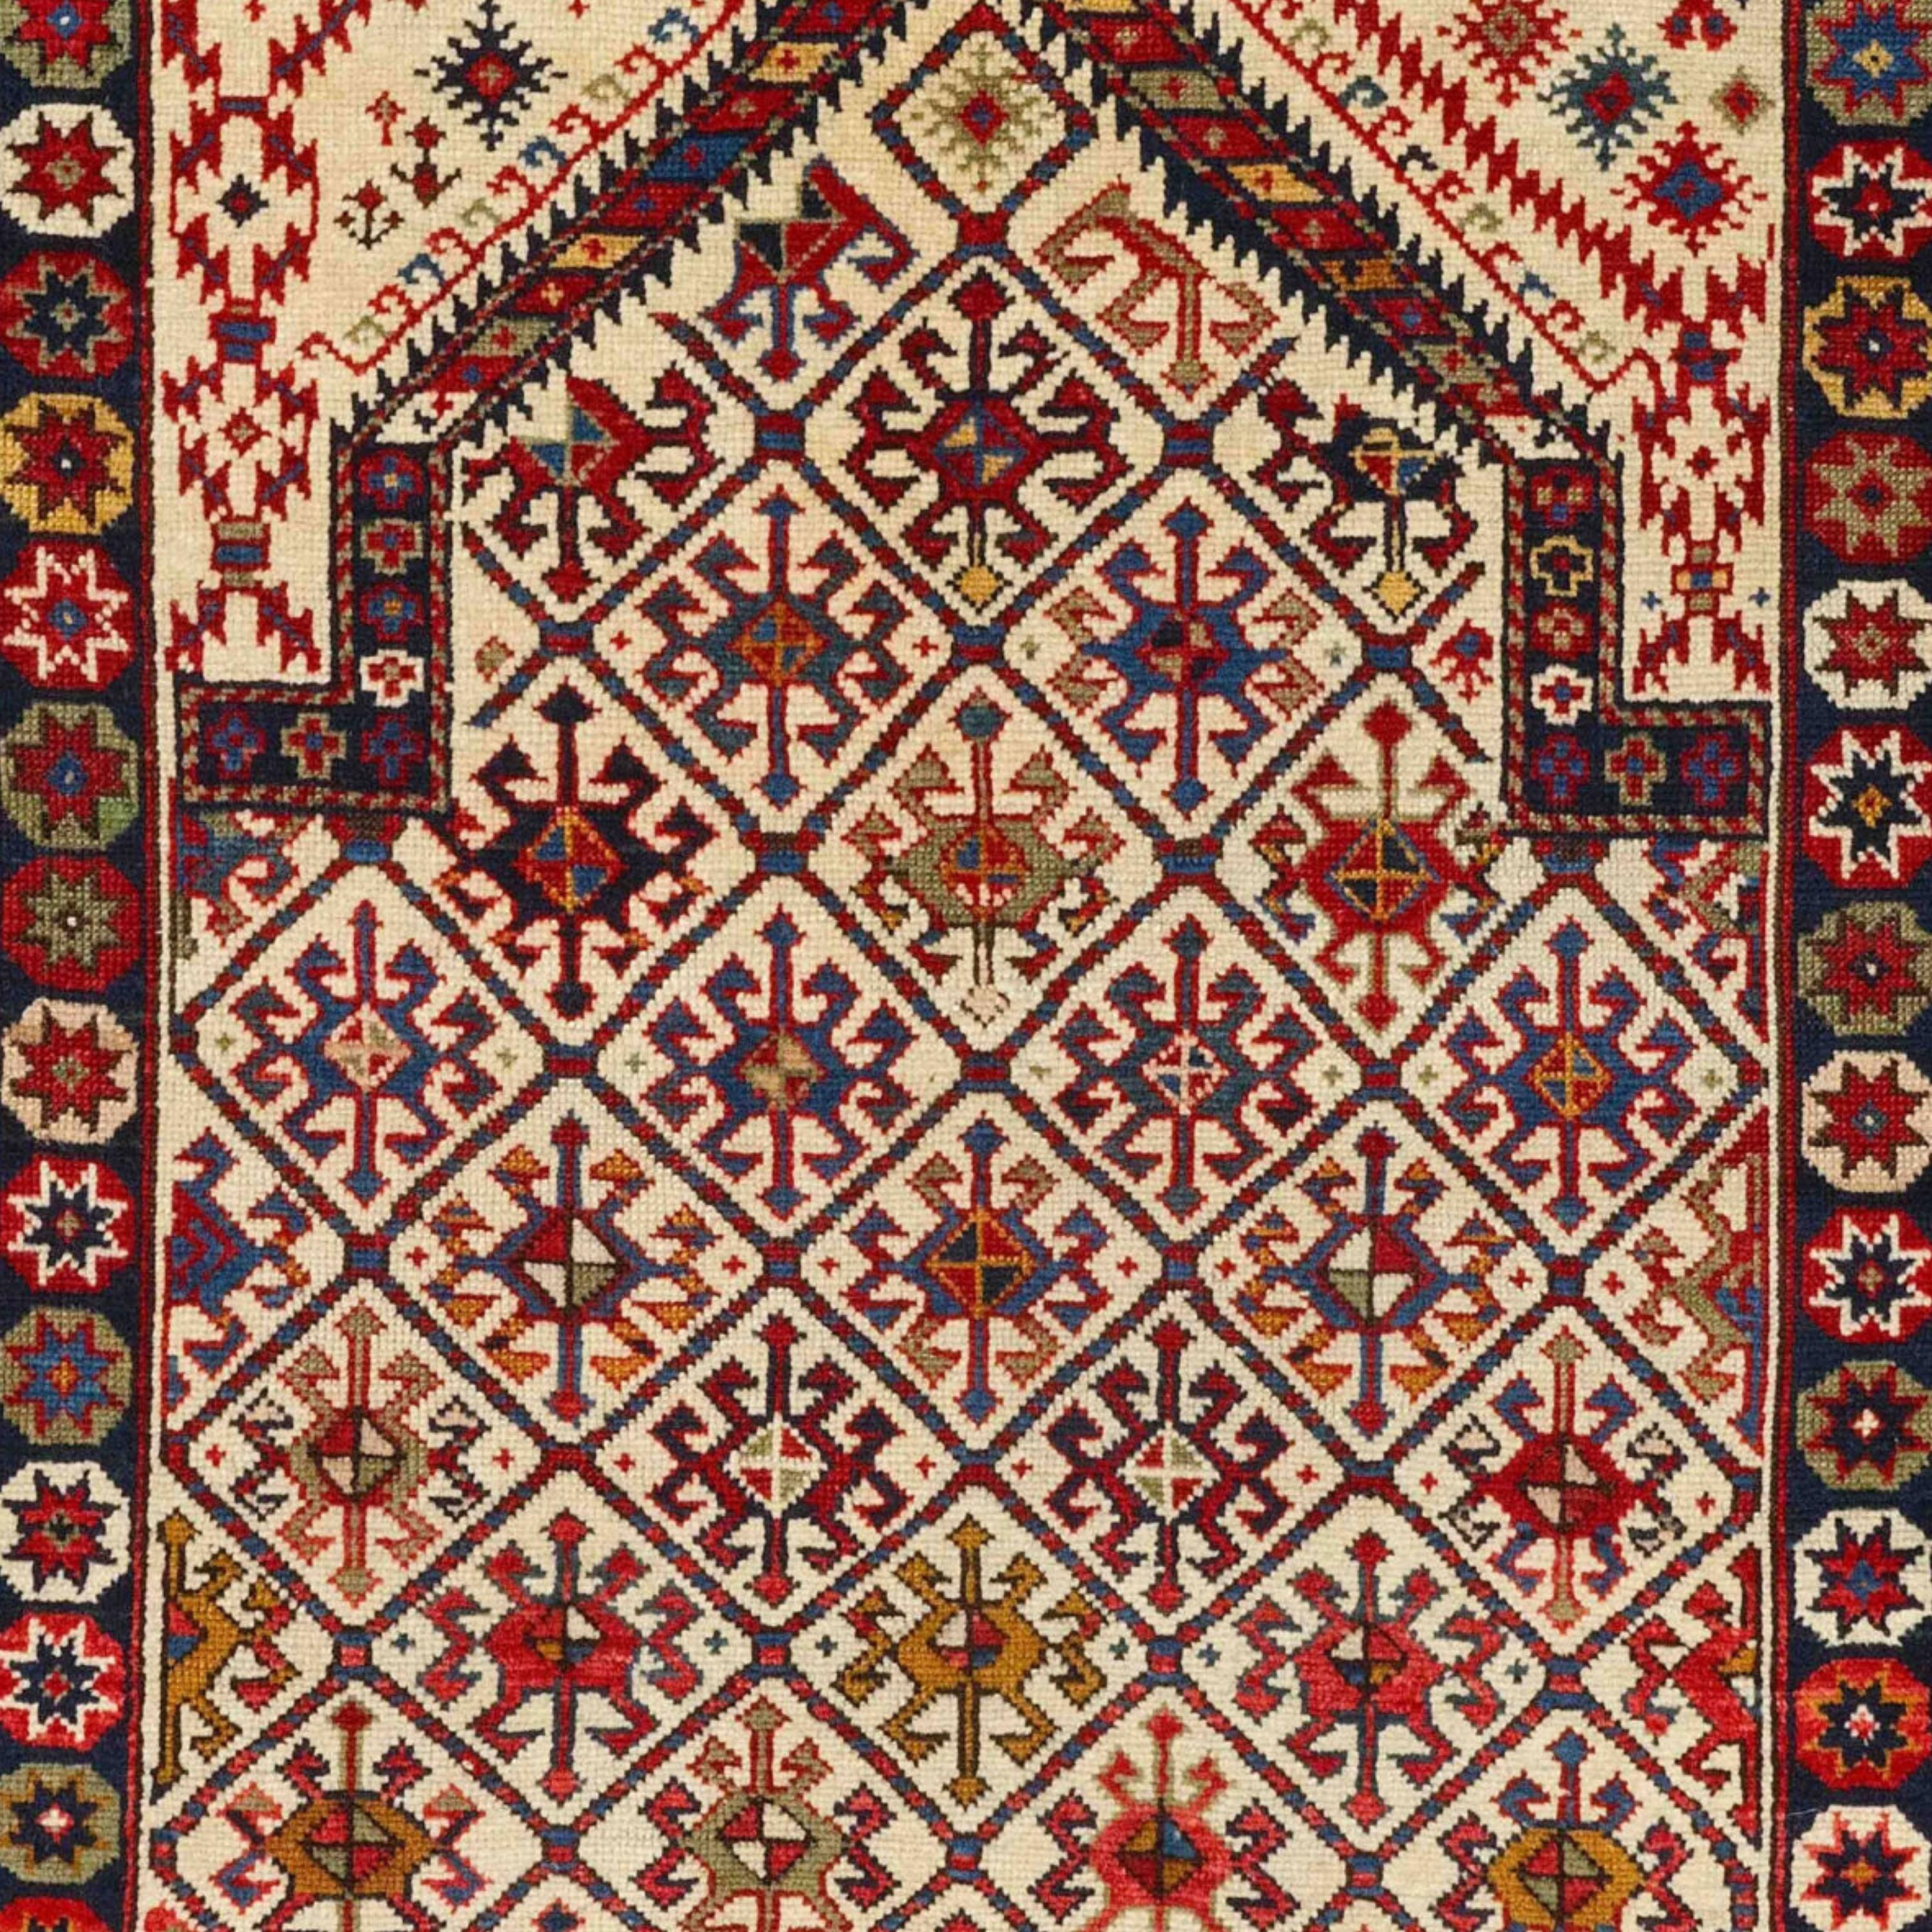 Middle of 19th Century Caucasian Prayer Kuba Rug, Antique Rug, Caucasus Rug In Good Condition For Sale In Sultanahmet, 34